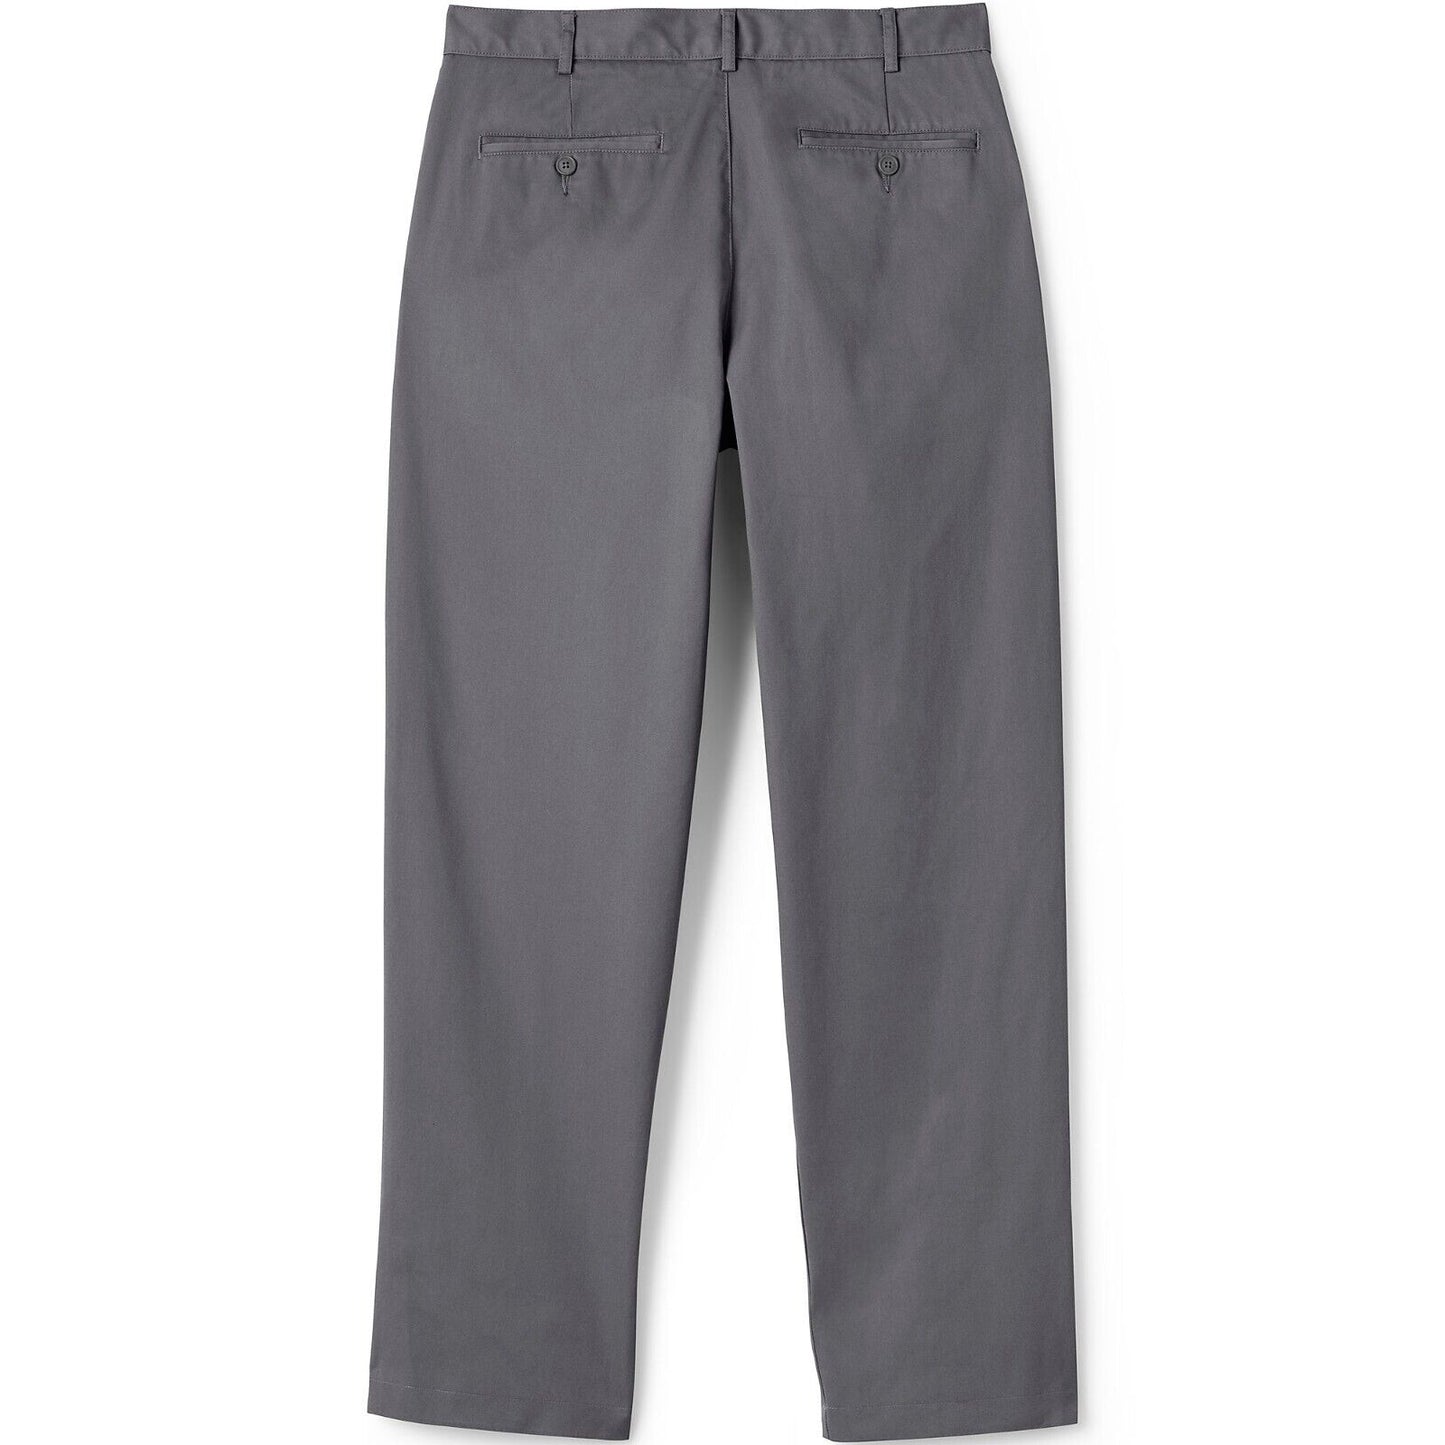 Men's Blend Plain Front Chino Pants Size 32